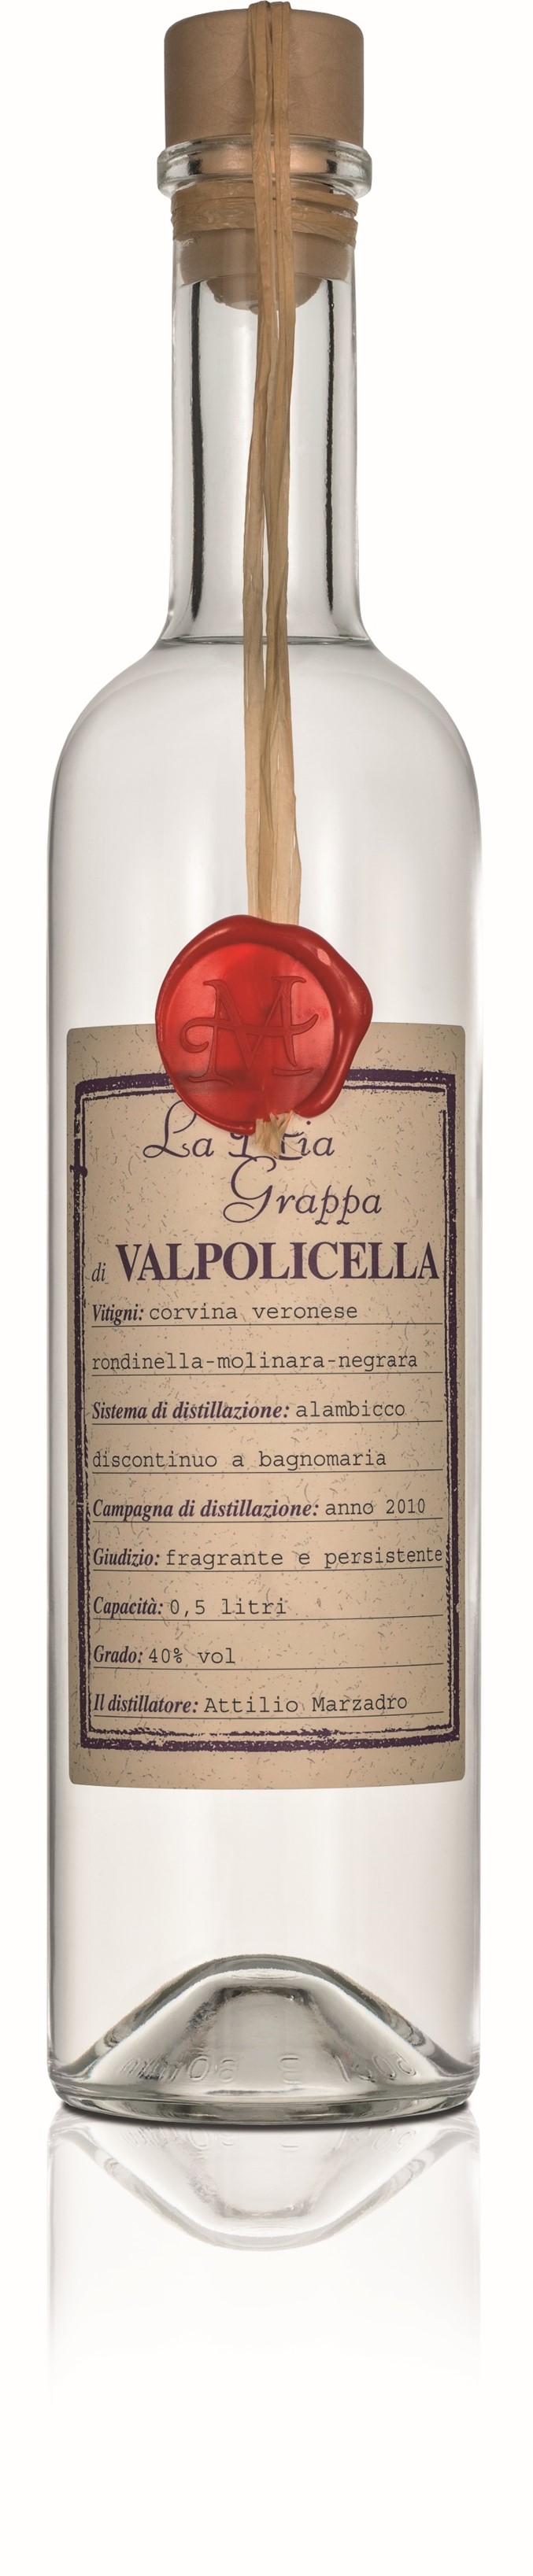 Valpolicella Grappa Italia La 40% | Vino | Mia 0,5l Marzadro di